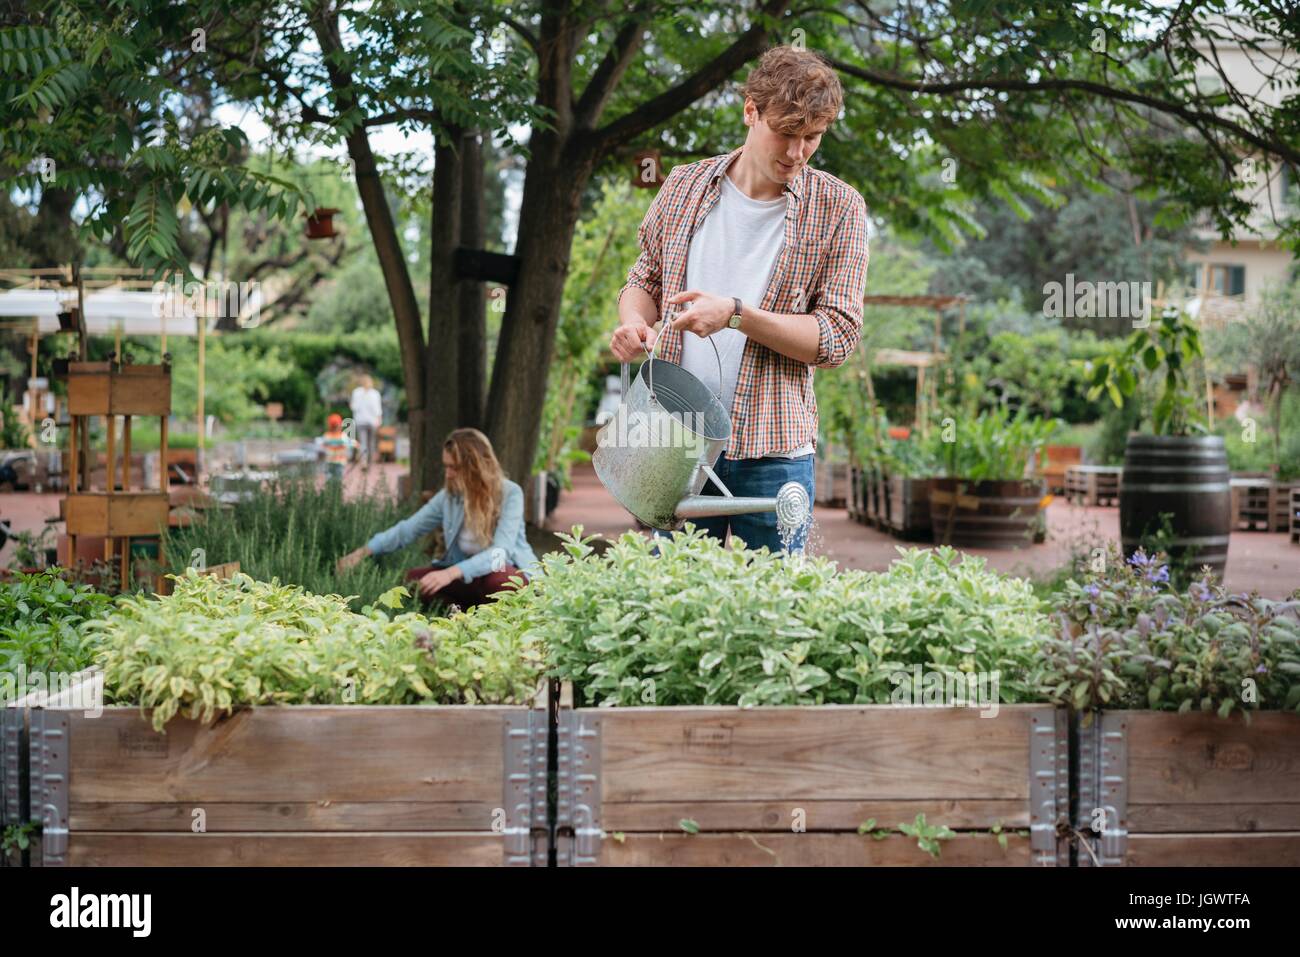 Jeune homme et femme en jardin urbain, d'un jeune homme l'arrosage des plantes à l'aide d'arrosoir auge Banque D'Images